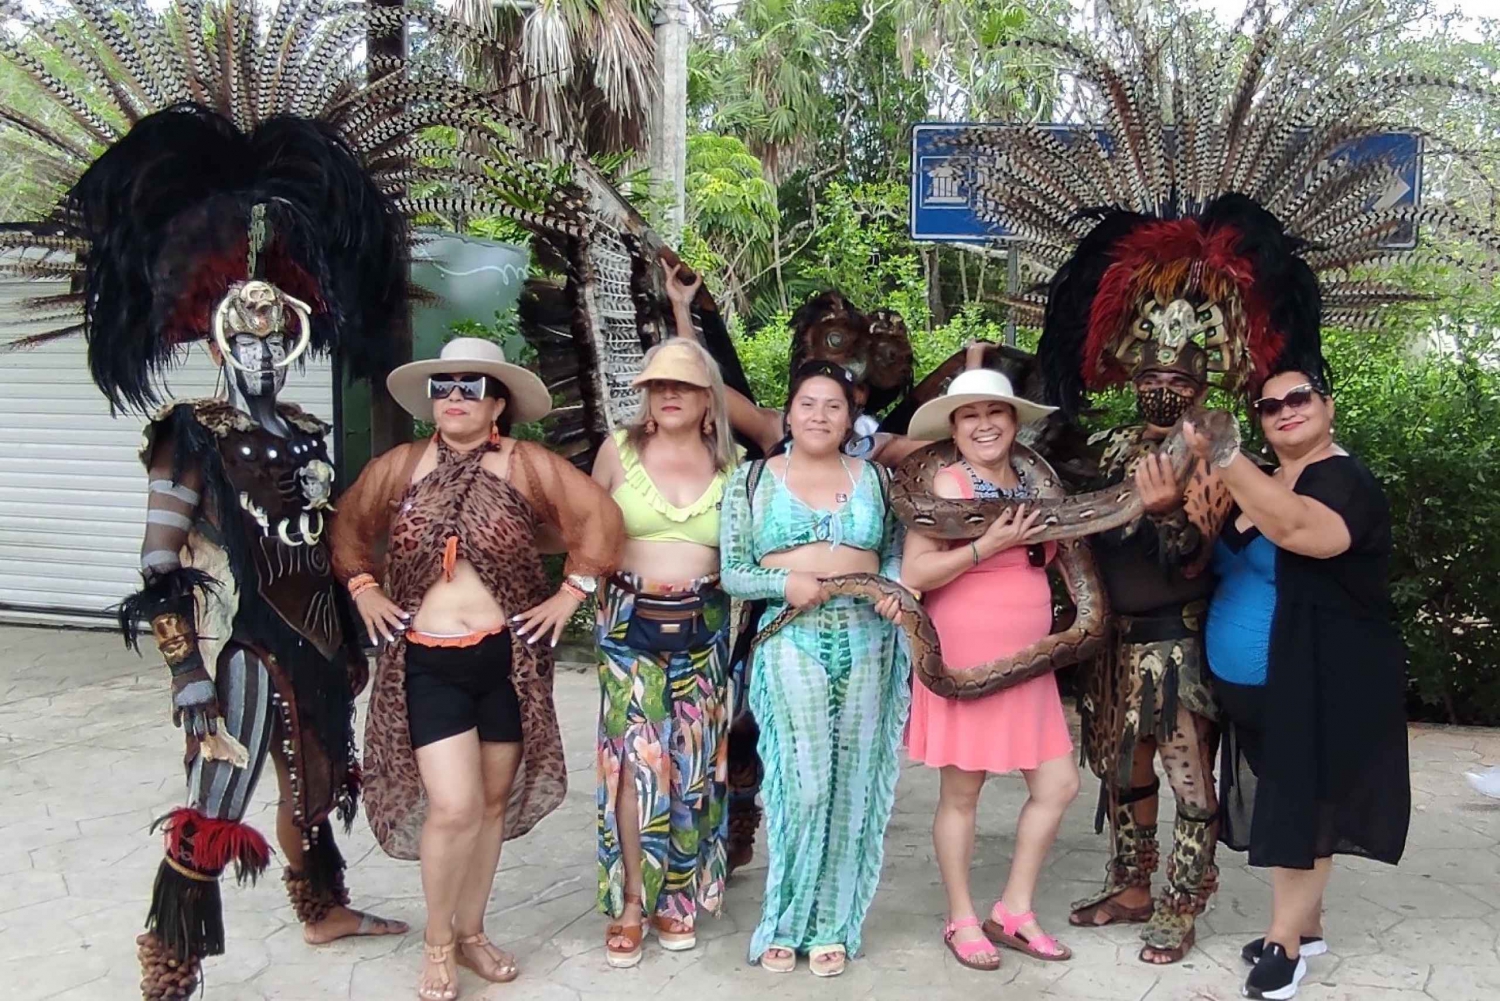 Quintana Roo: Tulum, Cobá, Cenote, Playa del Carmen & Buffet